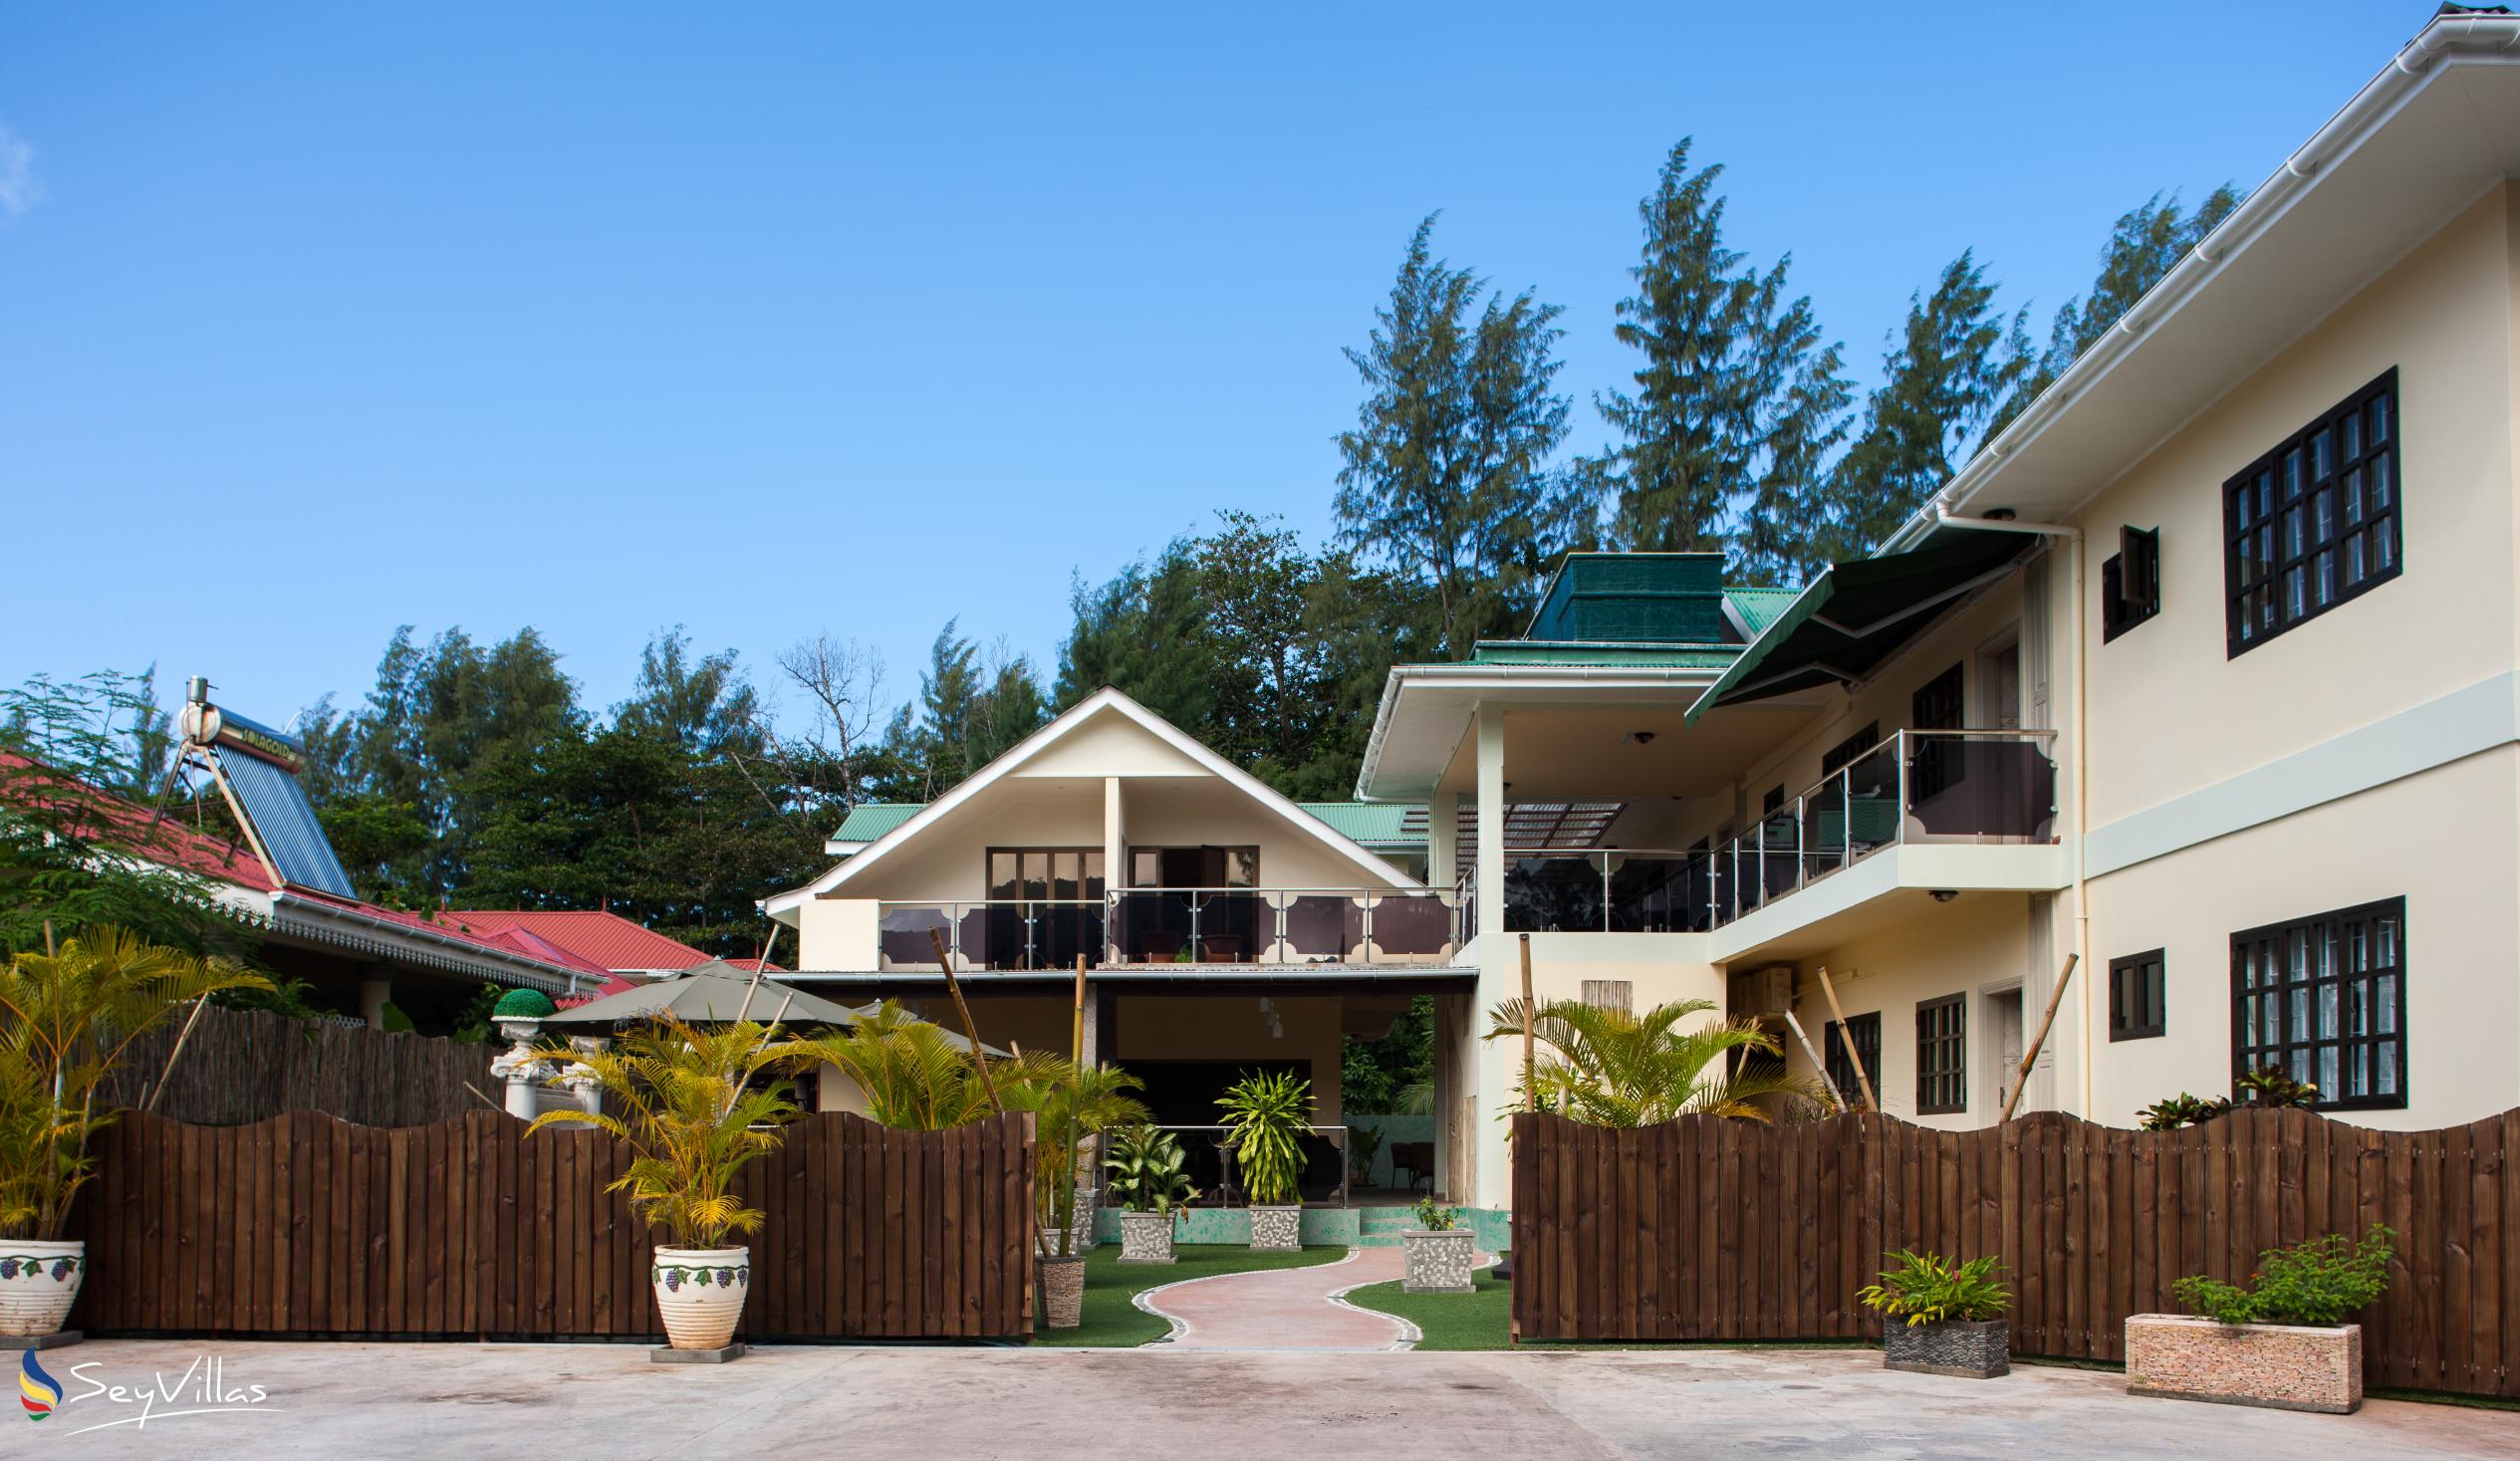 Foto 9: Chez Bea Villa - Aussenbereich - Praslin (Seychellen)